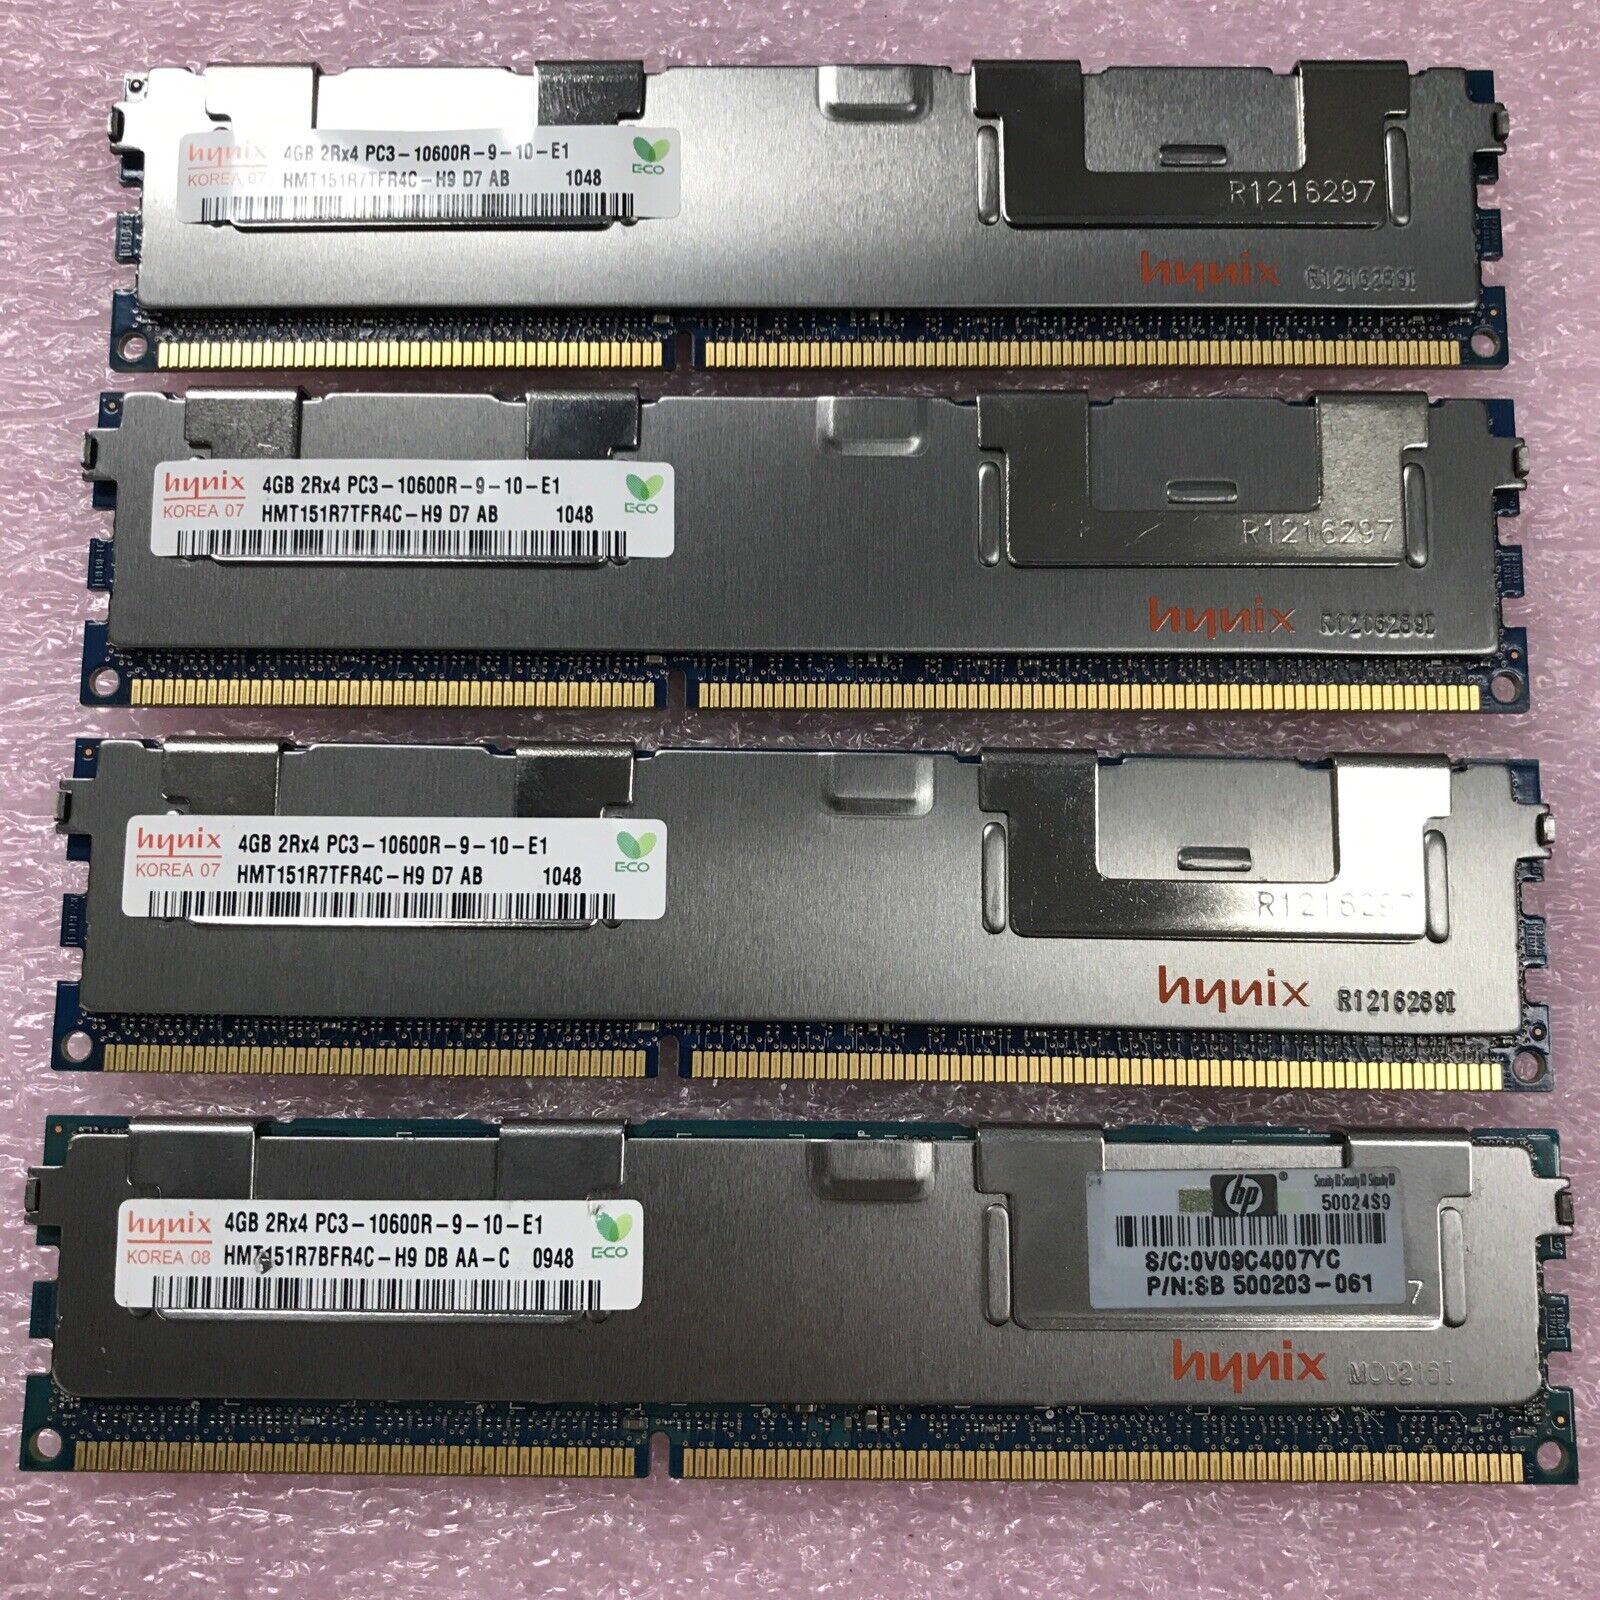 Hynix 16GB Kit 4x4GB 2Rx4 PC3-10600R-9-10-E1 Server RAM HMT151R7TFR4C-H9